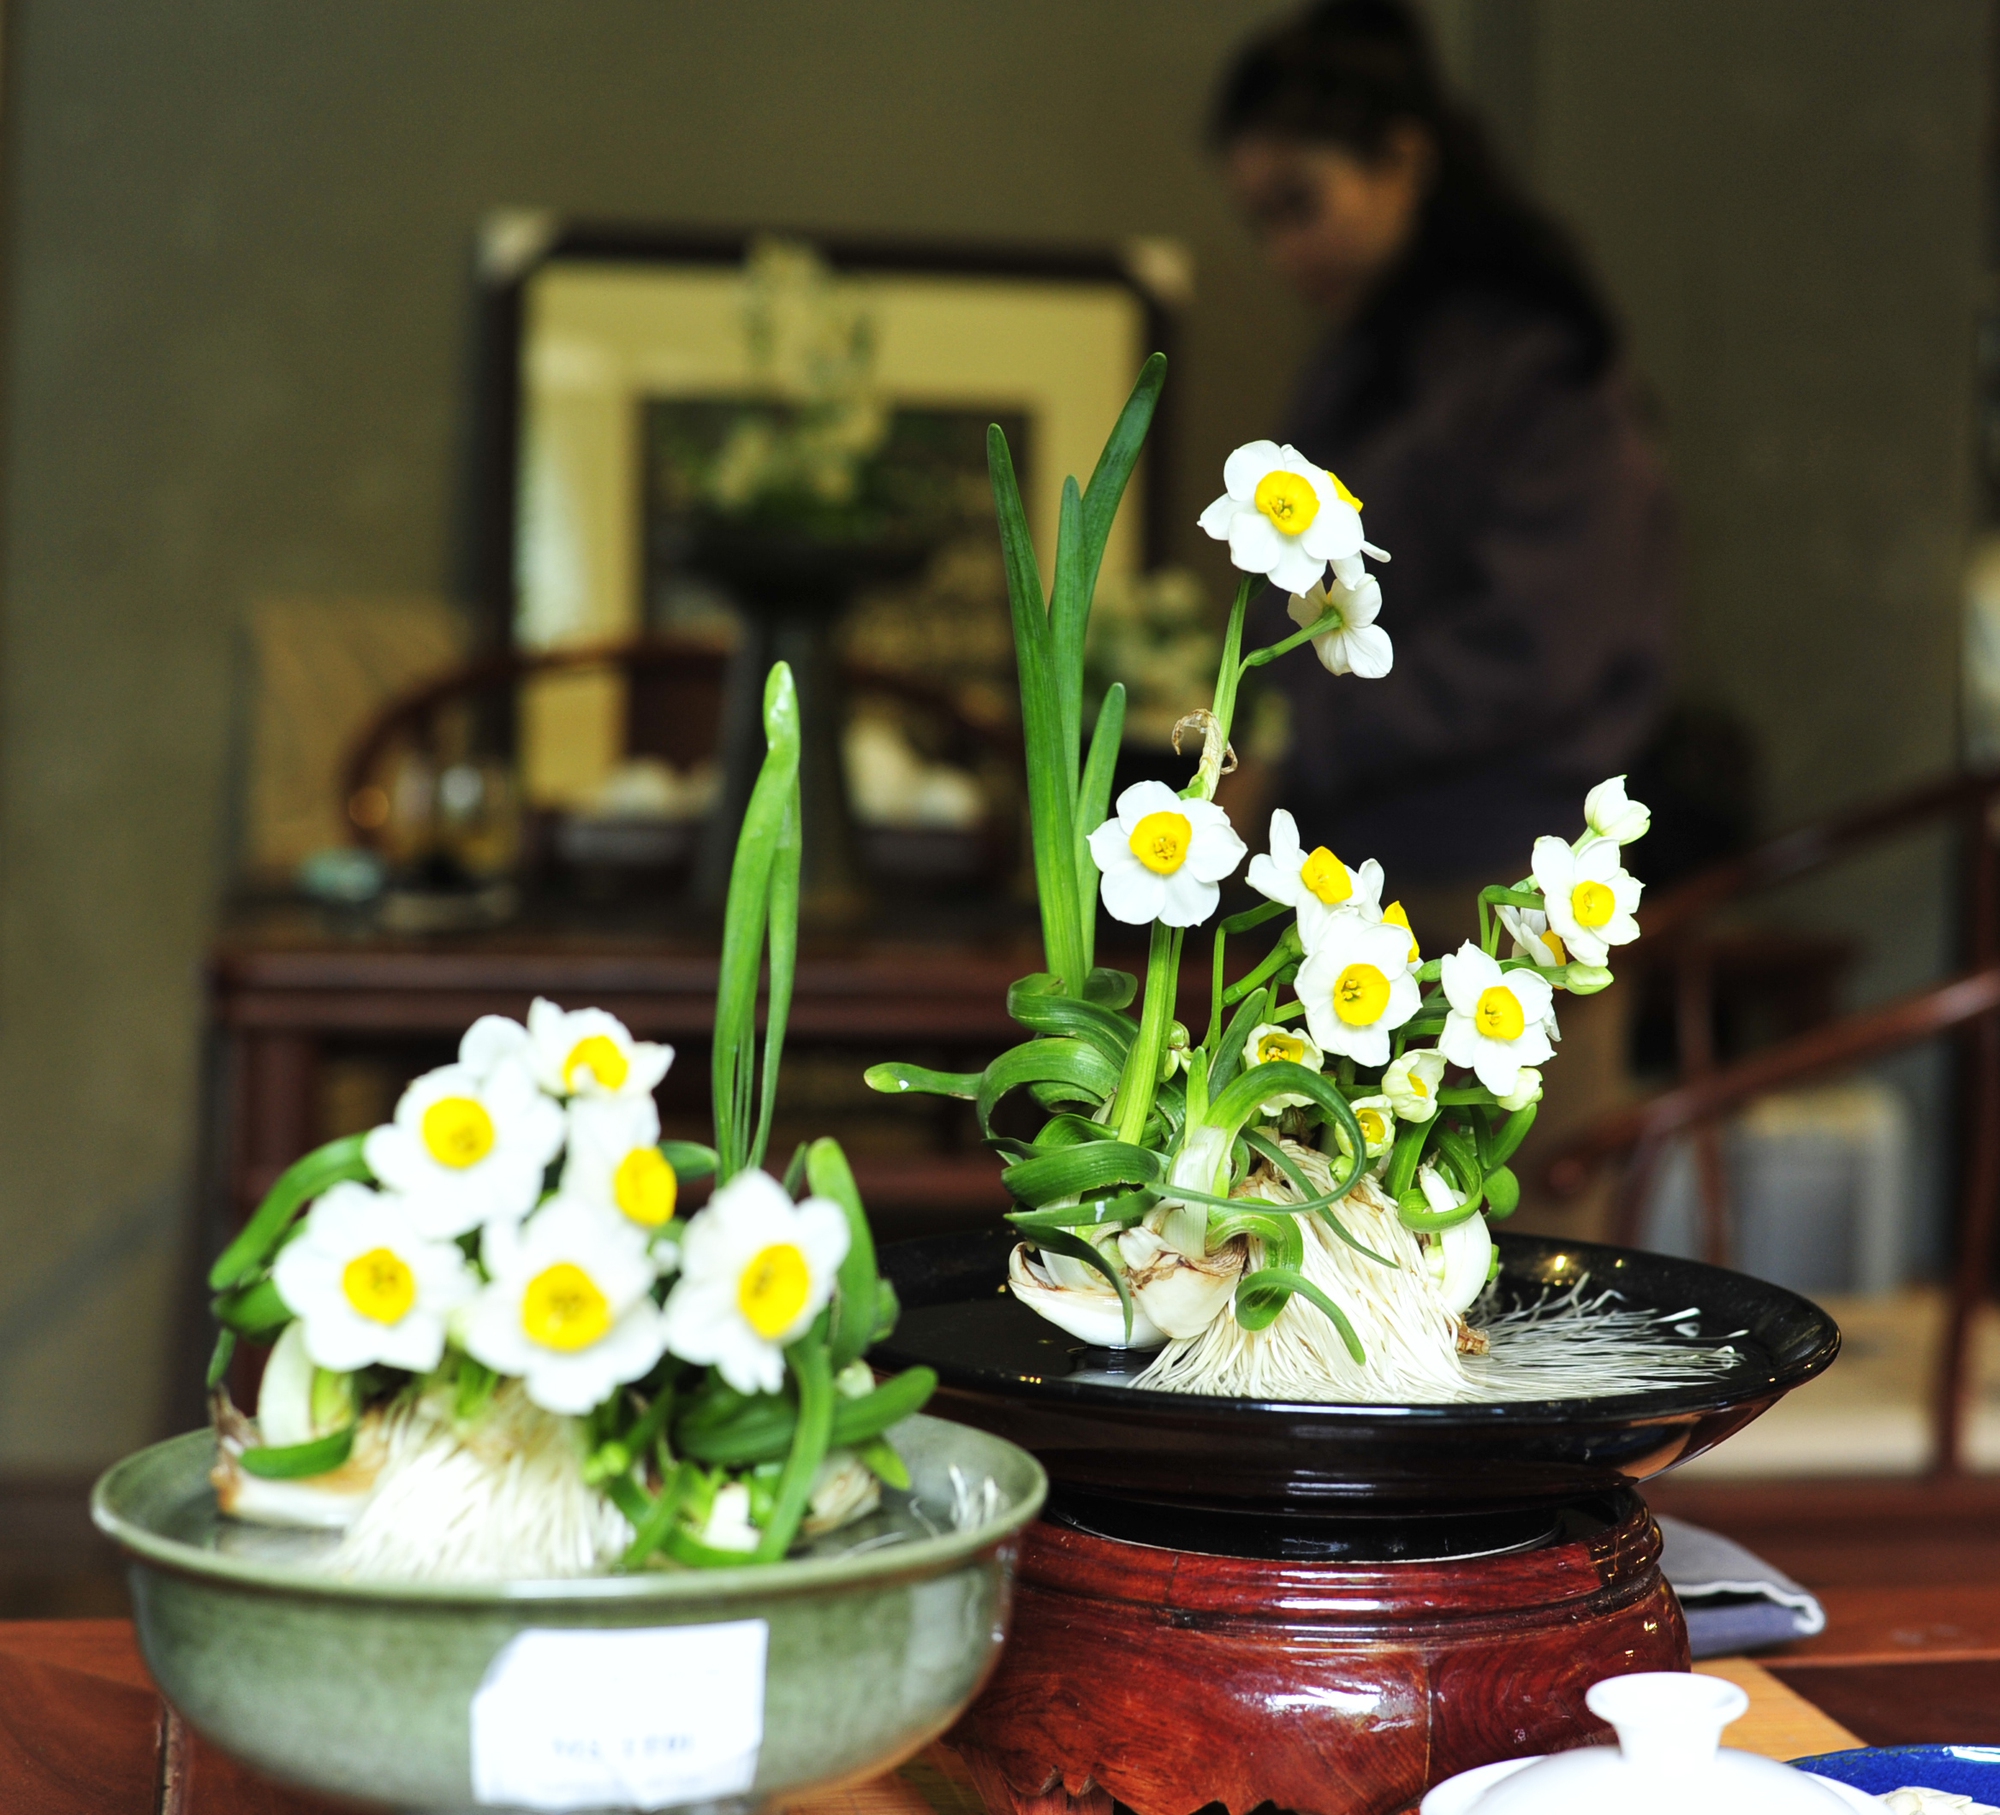 với người Hà Nội xưa, thủy tiên là loài hoa mang vẻ đẹp quý phái, là biểu tượng của sự may mắn và trường thọ.